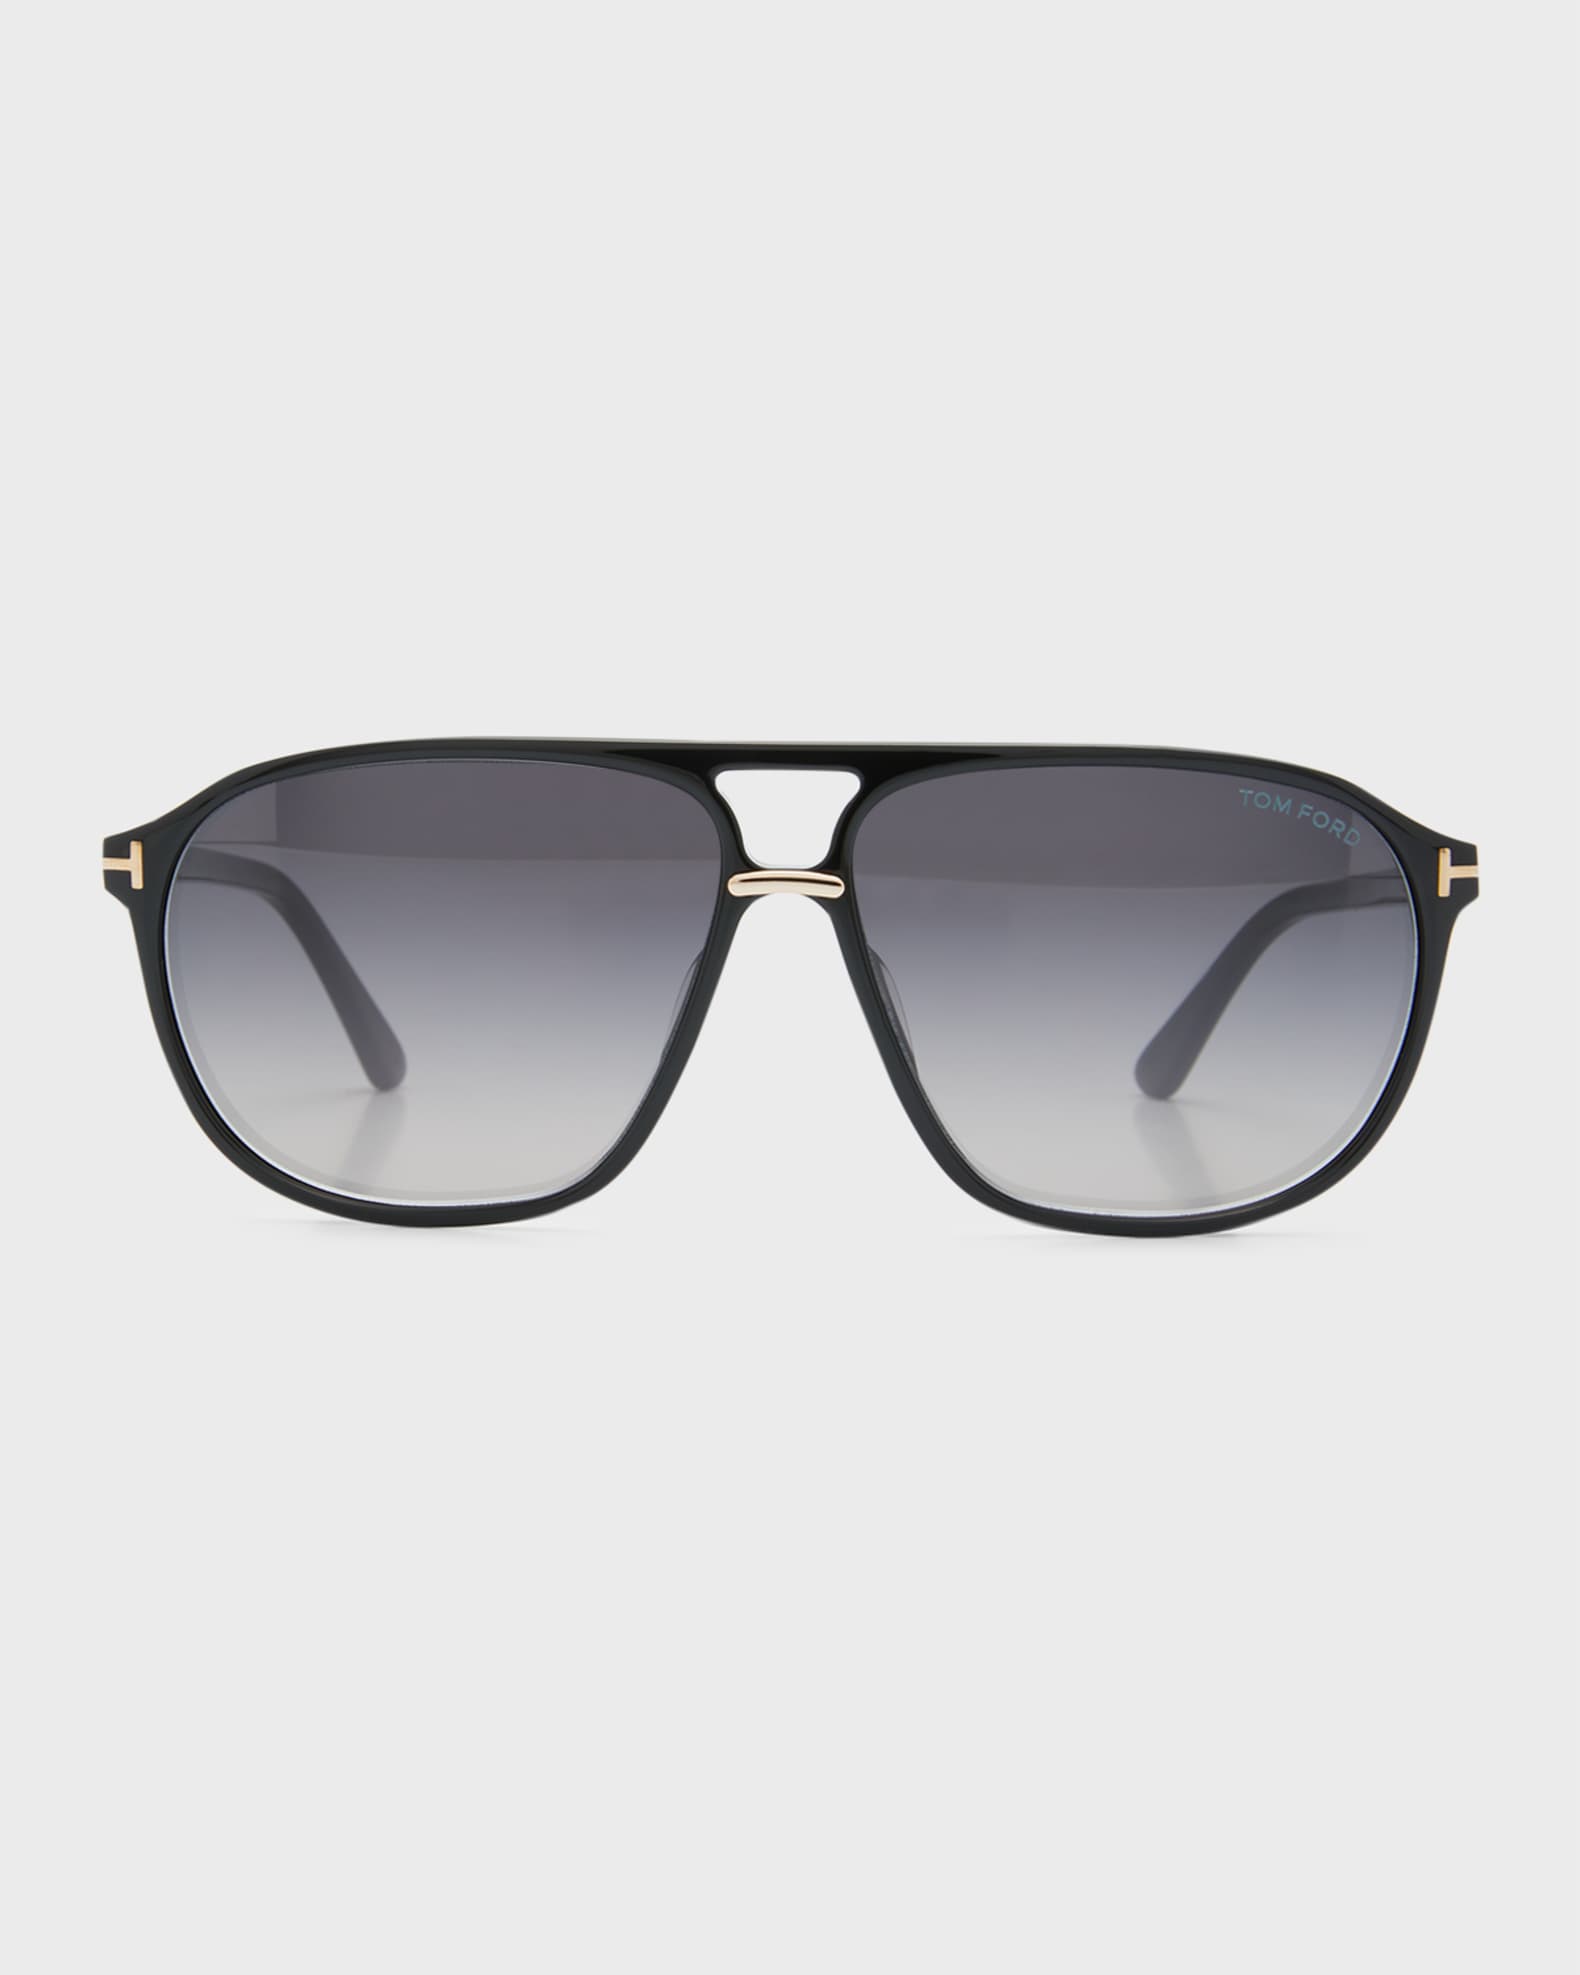 TOM FORD Men's Bruce Acetate Square Sunglasses | Neiman Marcus